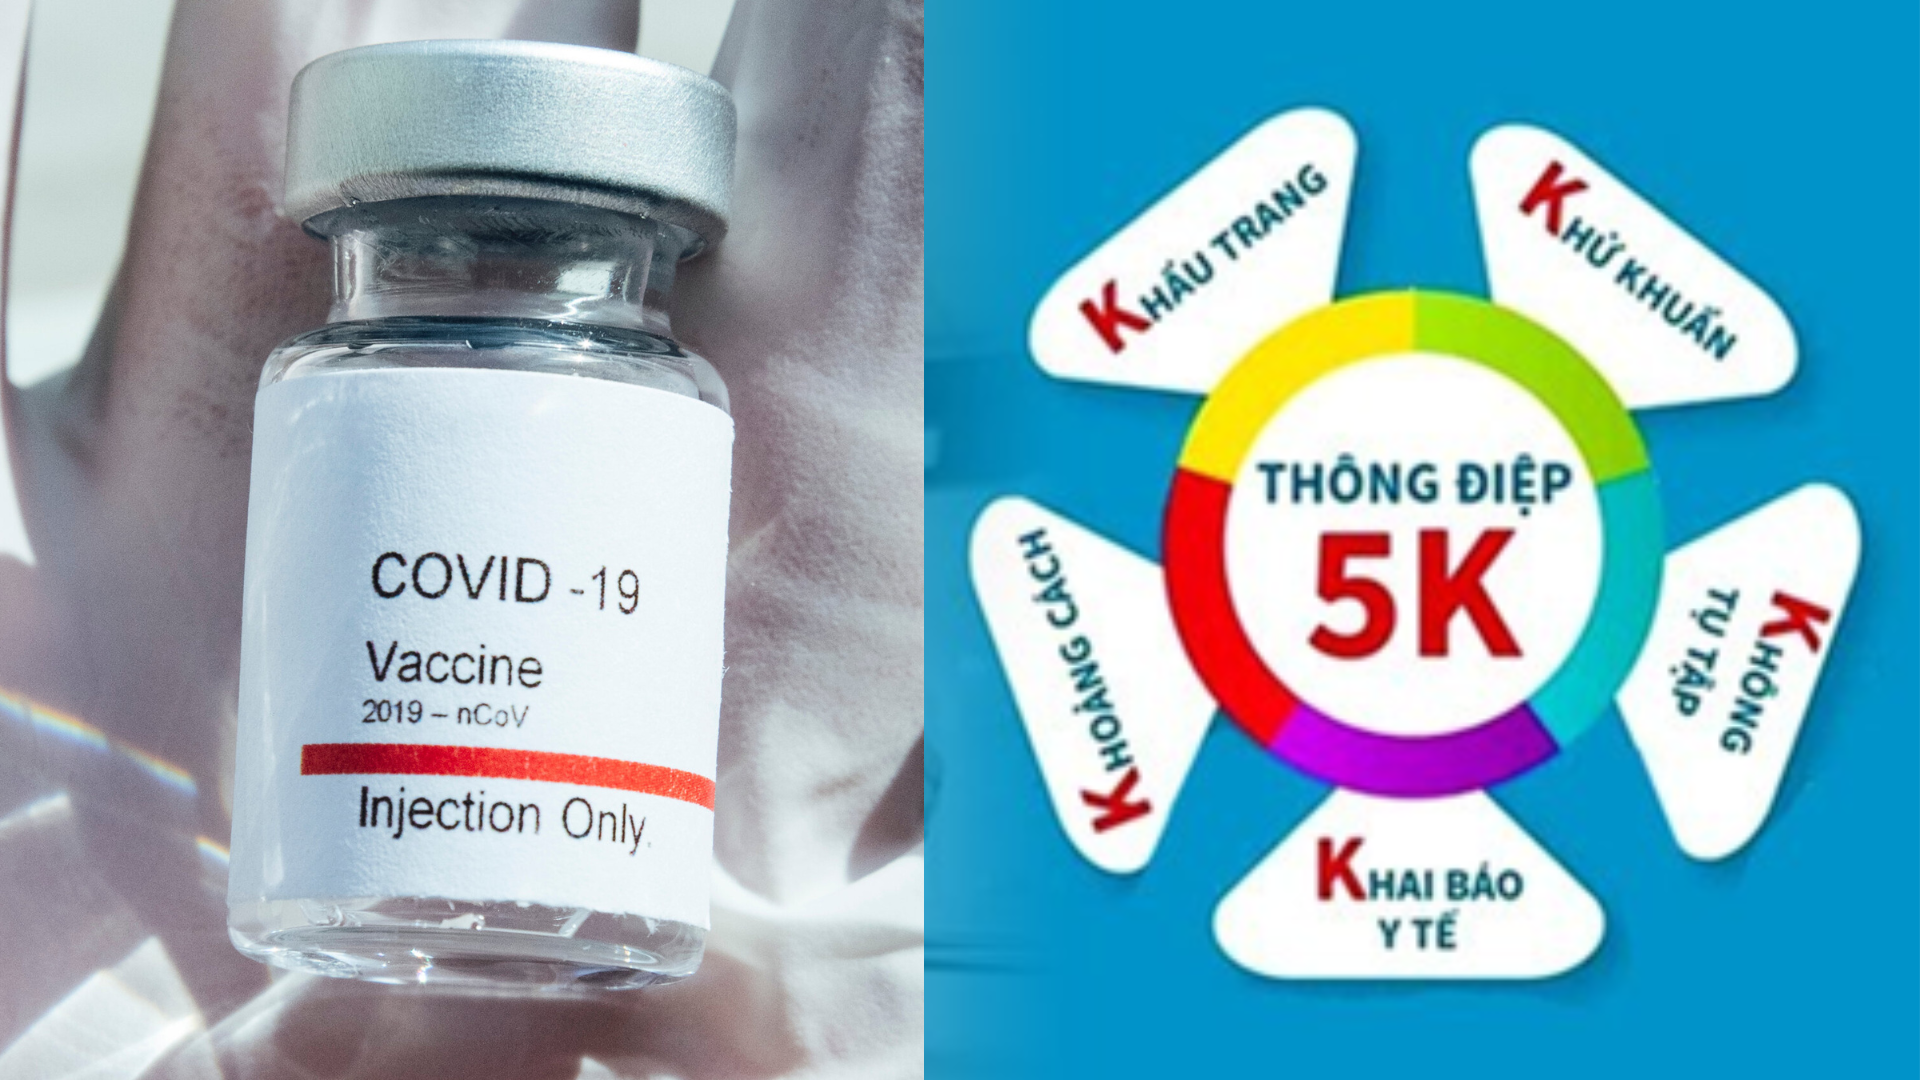 Thực hiện tiêm Vaccine và thông điệp 5K ngăn Covid-19 bùng phát 